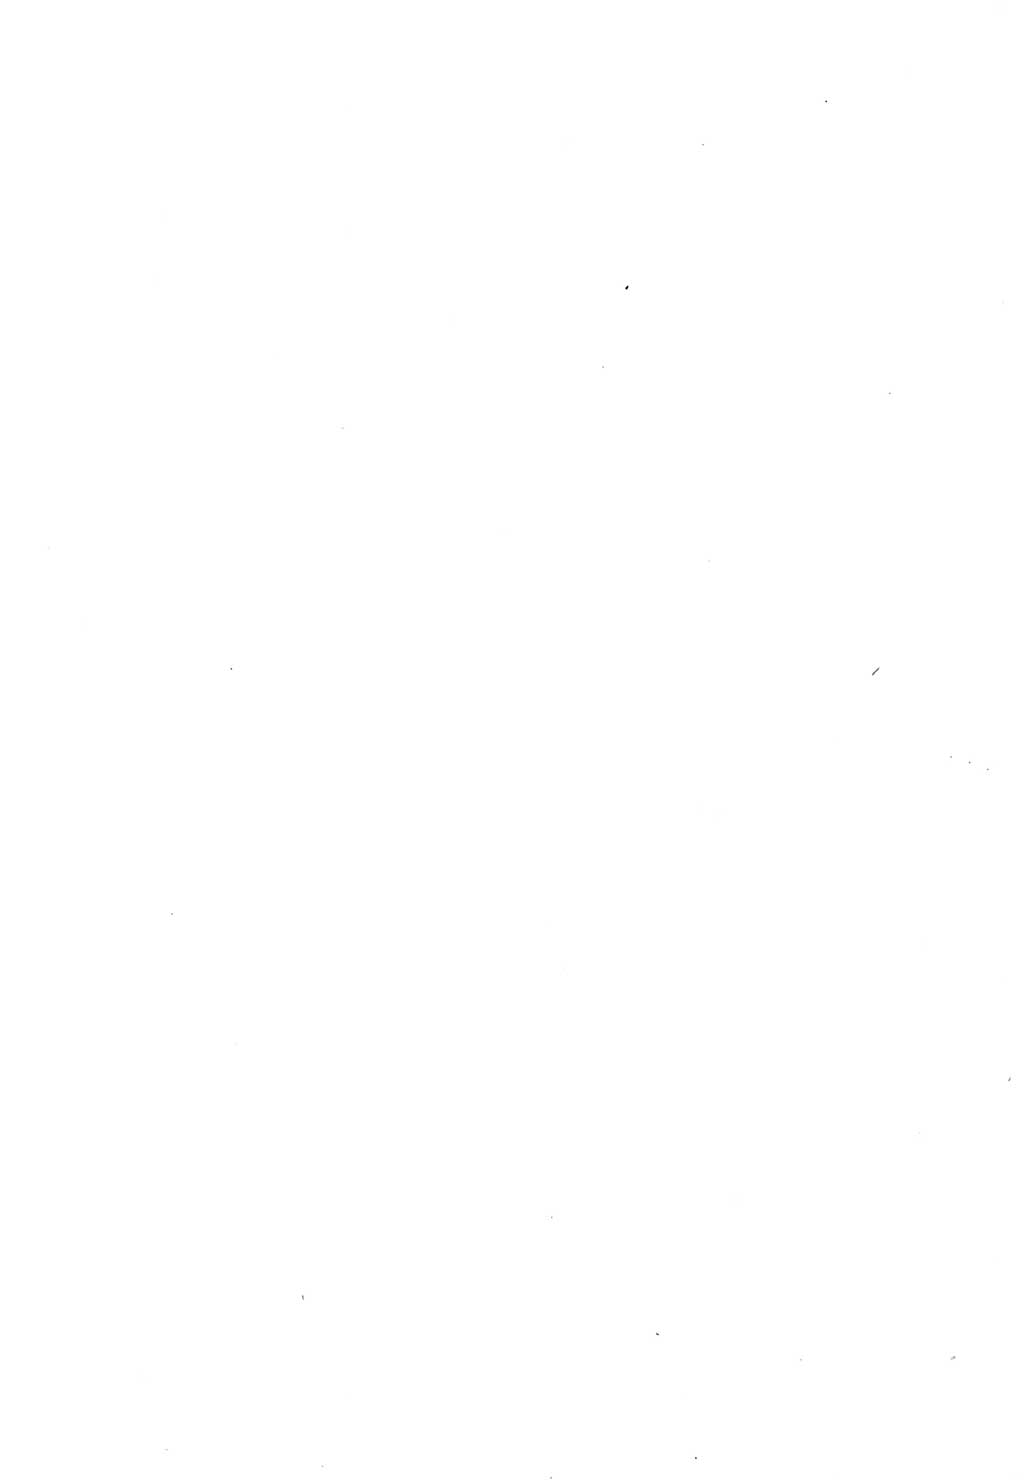 Protokoll der Verhandlungen des Ⅲ. Parteitages der Sozialistischen Einheitspartei Deutschlands (SED) [Deutsche Demokratische Republik (DDR)] 1950, Band 1, Seite 2 (Prot. Verh. Ⅲ. PT SED DDR 1950, Bd. 1, S. 2)